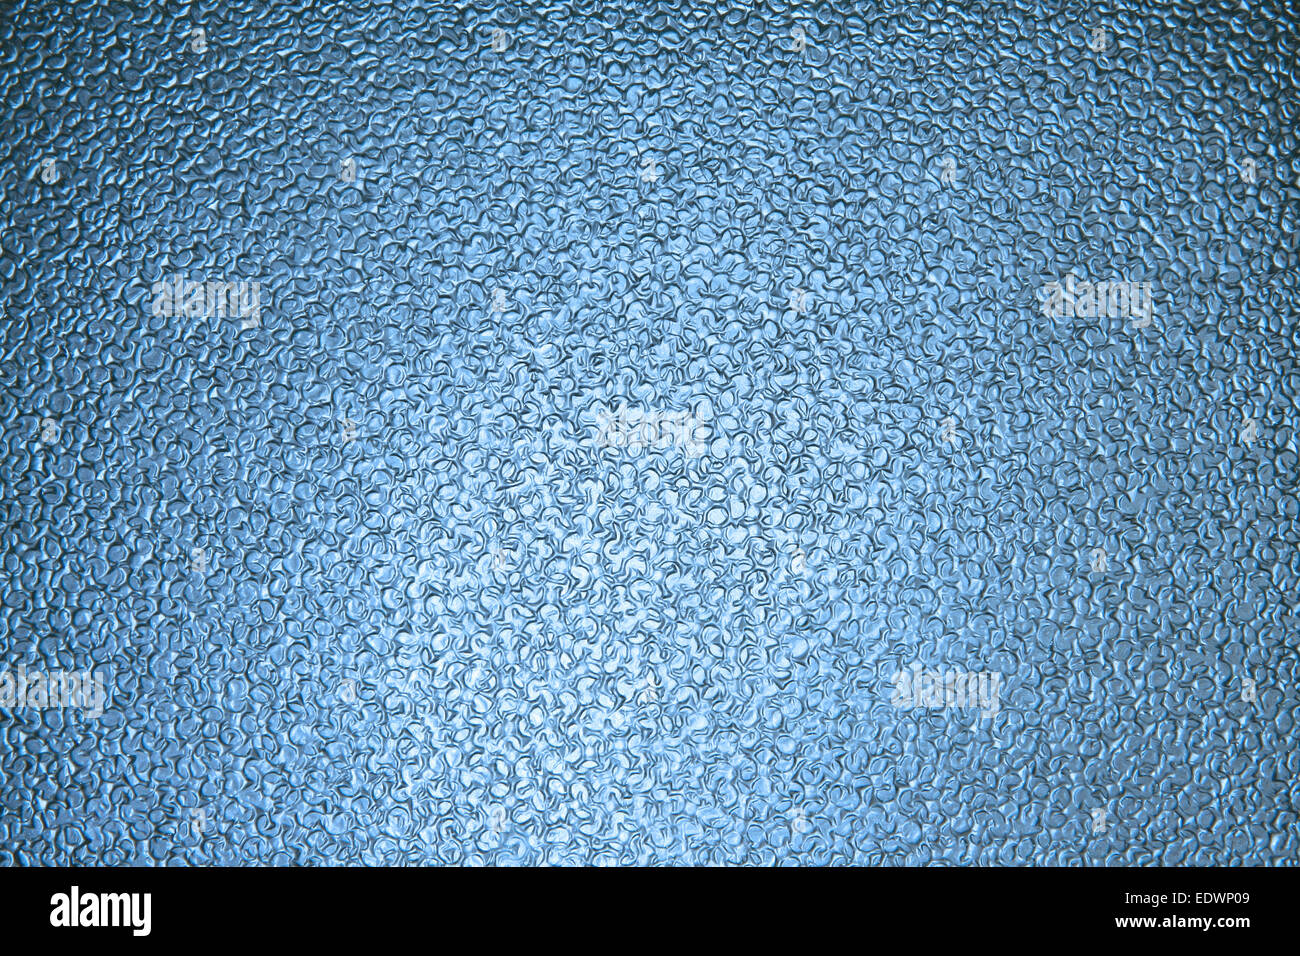 Profil de Claire lumière transparente en verre bleu surface texture mur de blocs dans la salle de bains Banque D'Images